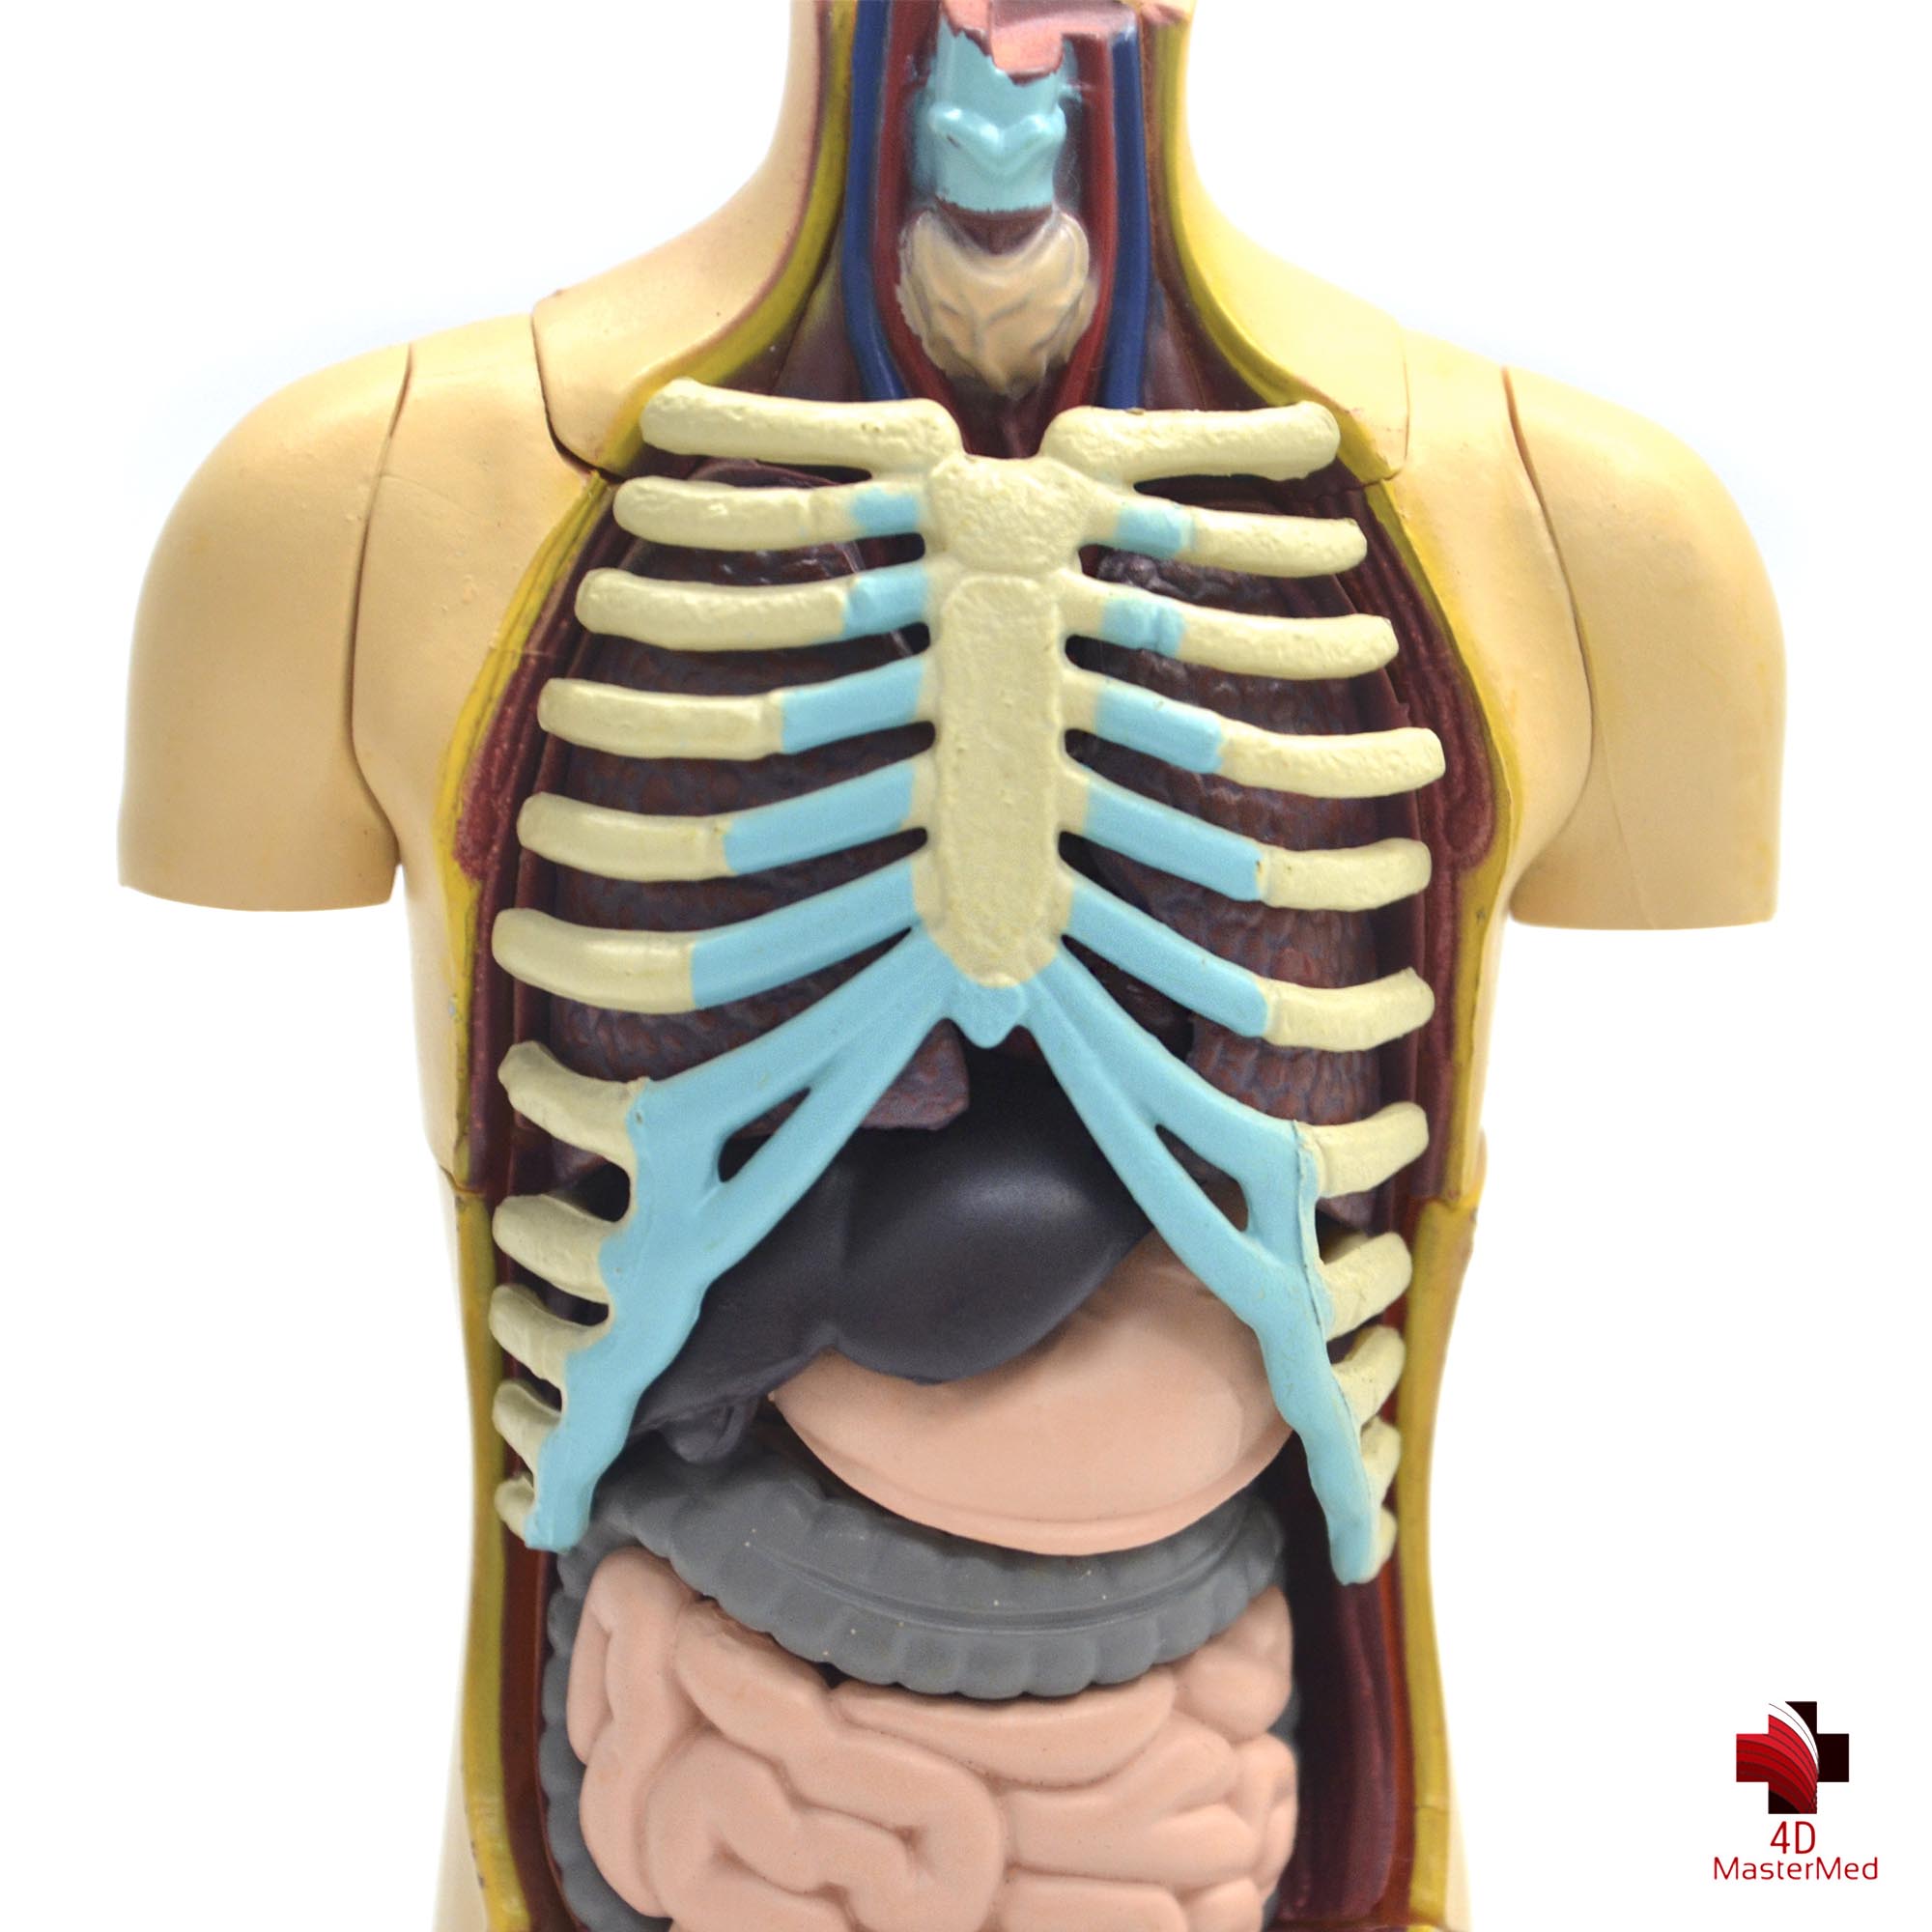 Anatomia do Torso Humano  - 4D MasterMed